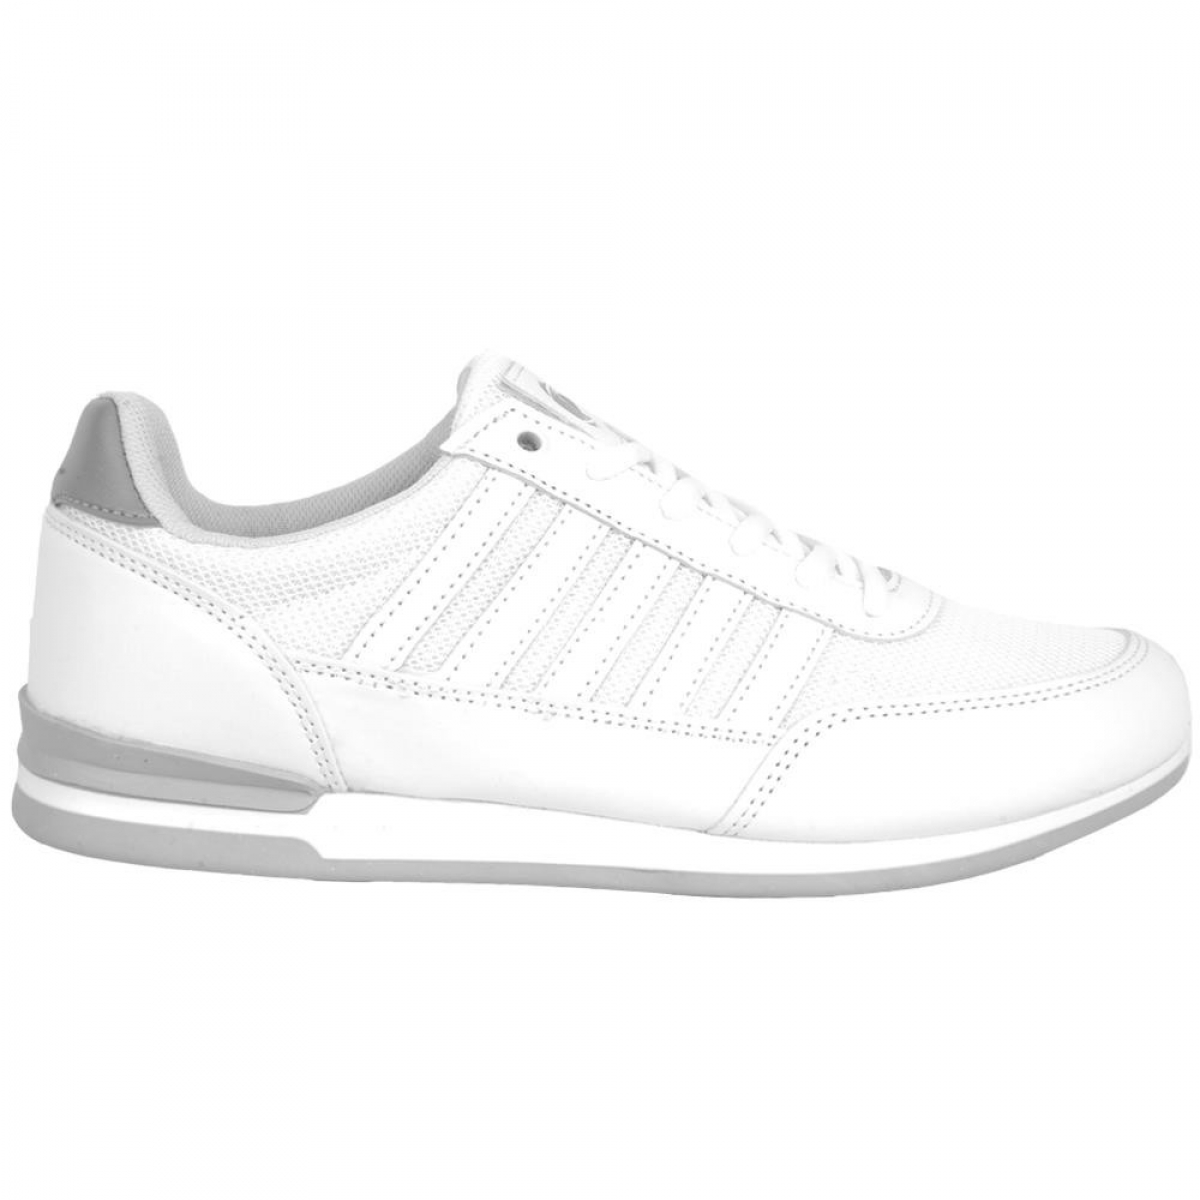 Flo 201-1135 Manner Beyaz Yazlık Bayan Sneaker Spor Ayakkabı. 3